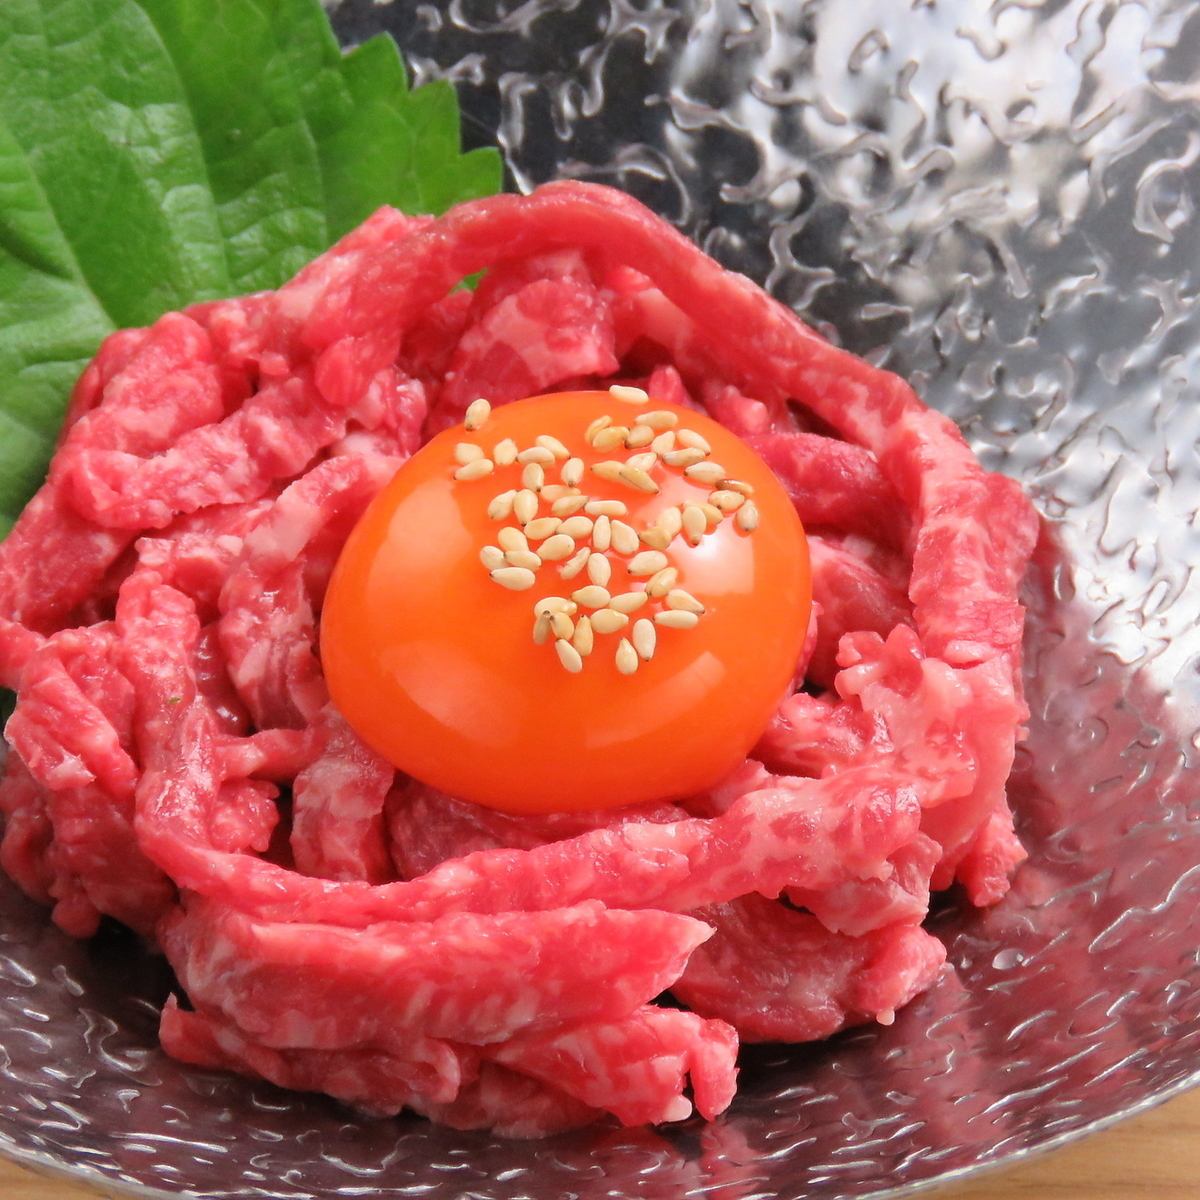 お肉は上質な北海道産を中心とした国内産を使用しています